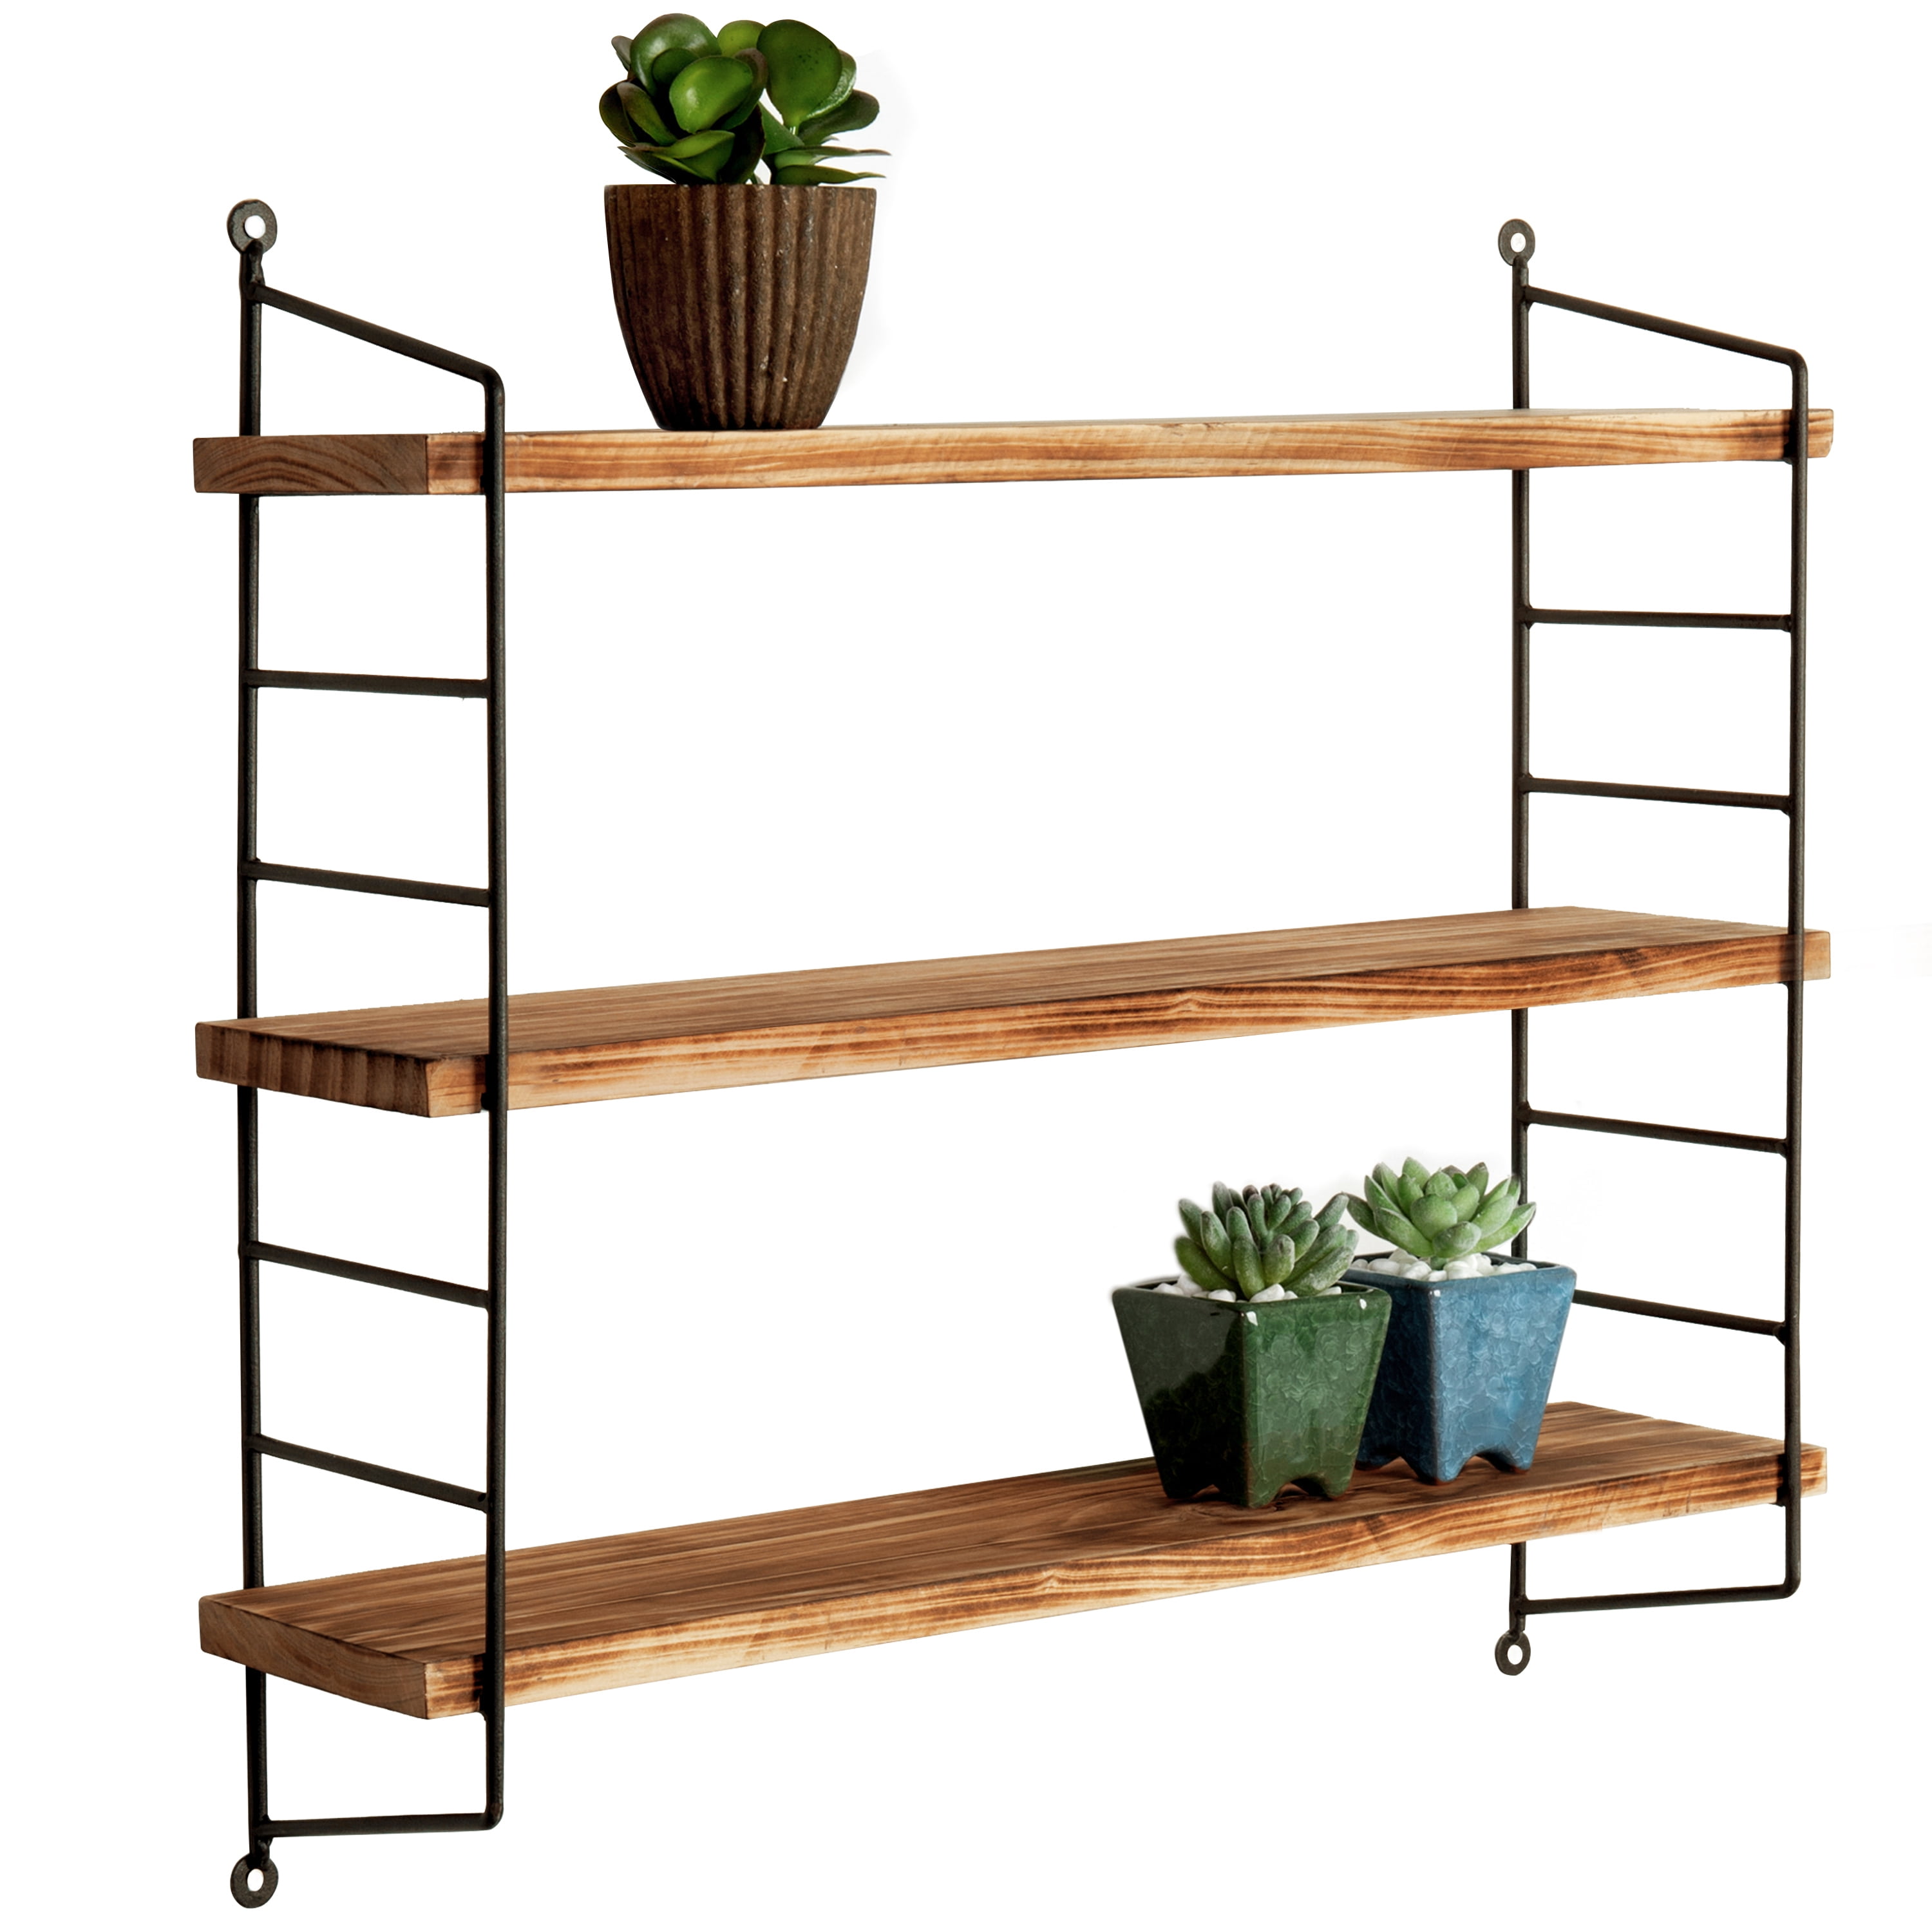 Wood Adjustable Shelves Support